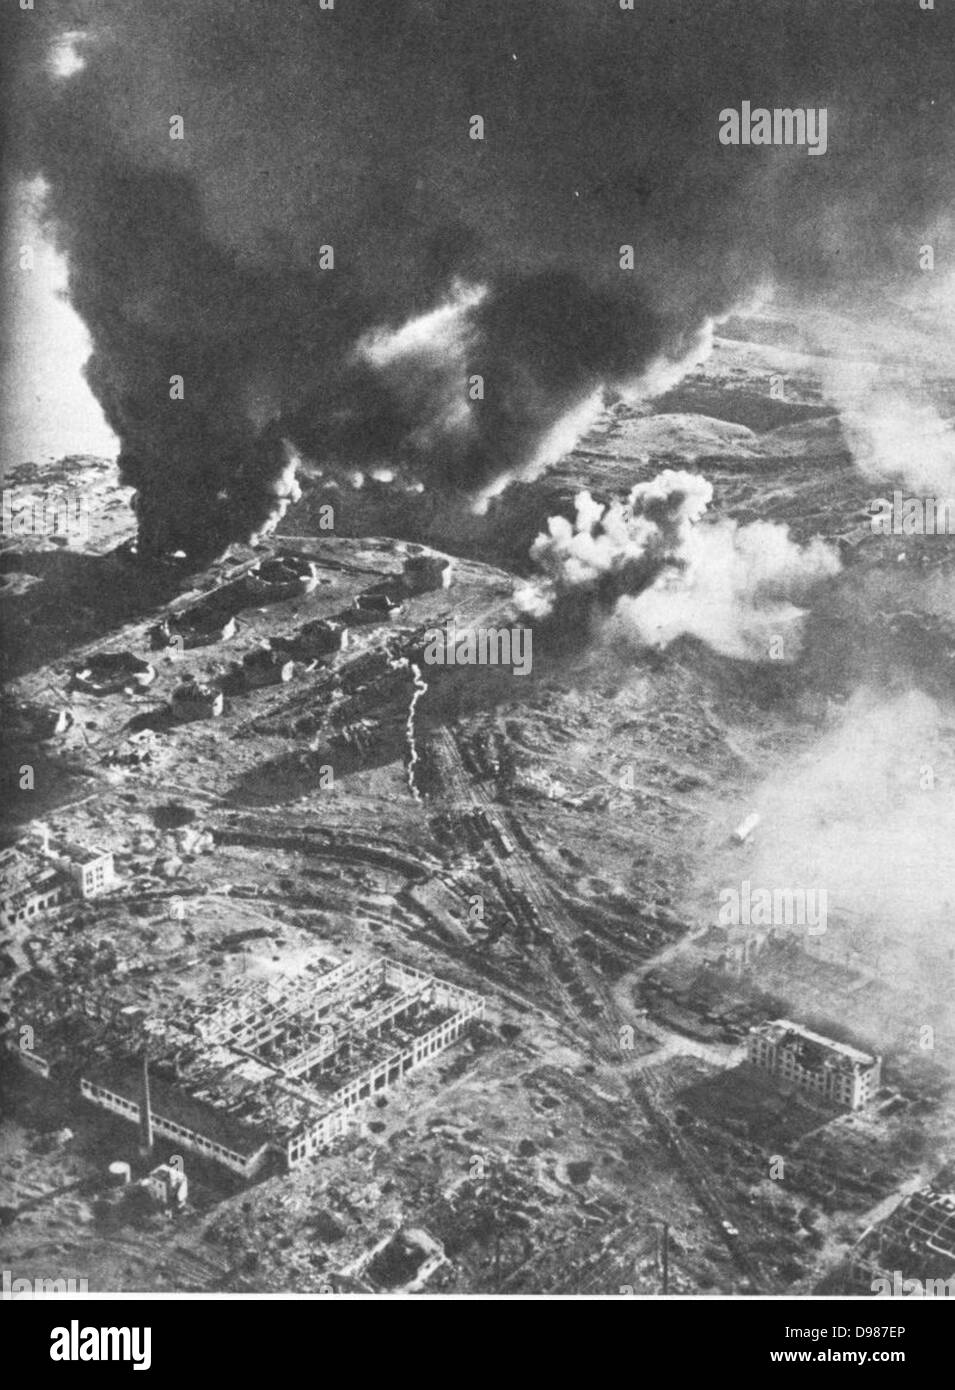 Bataille de Stalingrad - vue aérienne de magasins de carburant en feu. La bataille de Stalingrad entre l'Allemagne et l'Union soviétique a duré du 17 juillet 1942 jusqu'au 2 février 1943. La plus sanglante et brutale mosty de combats de la Seconde Guerre mondiale, elle a soutenu près de 2 millions de victimes. Il est considéré comme un tournant dans la guerre, avec l'Union soviétique victorieux. Banque D'Images